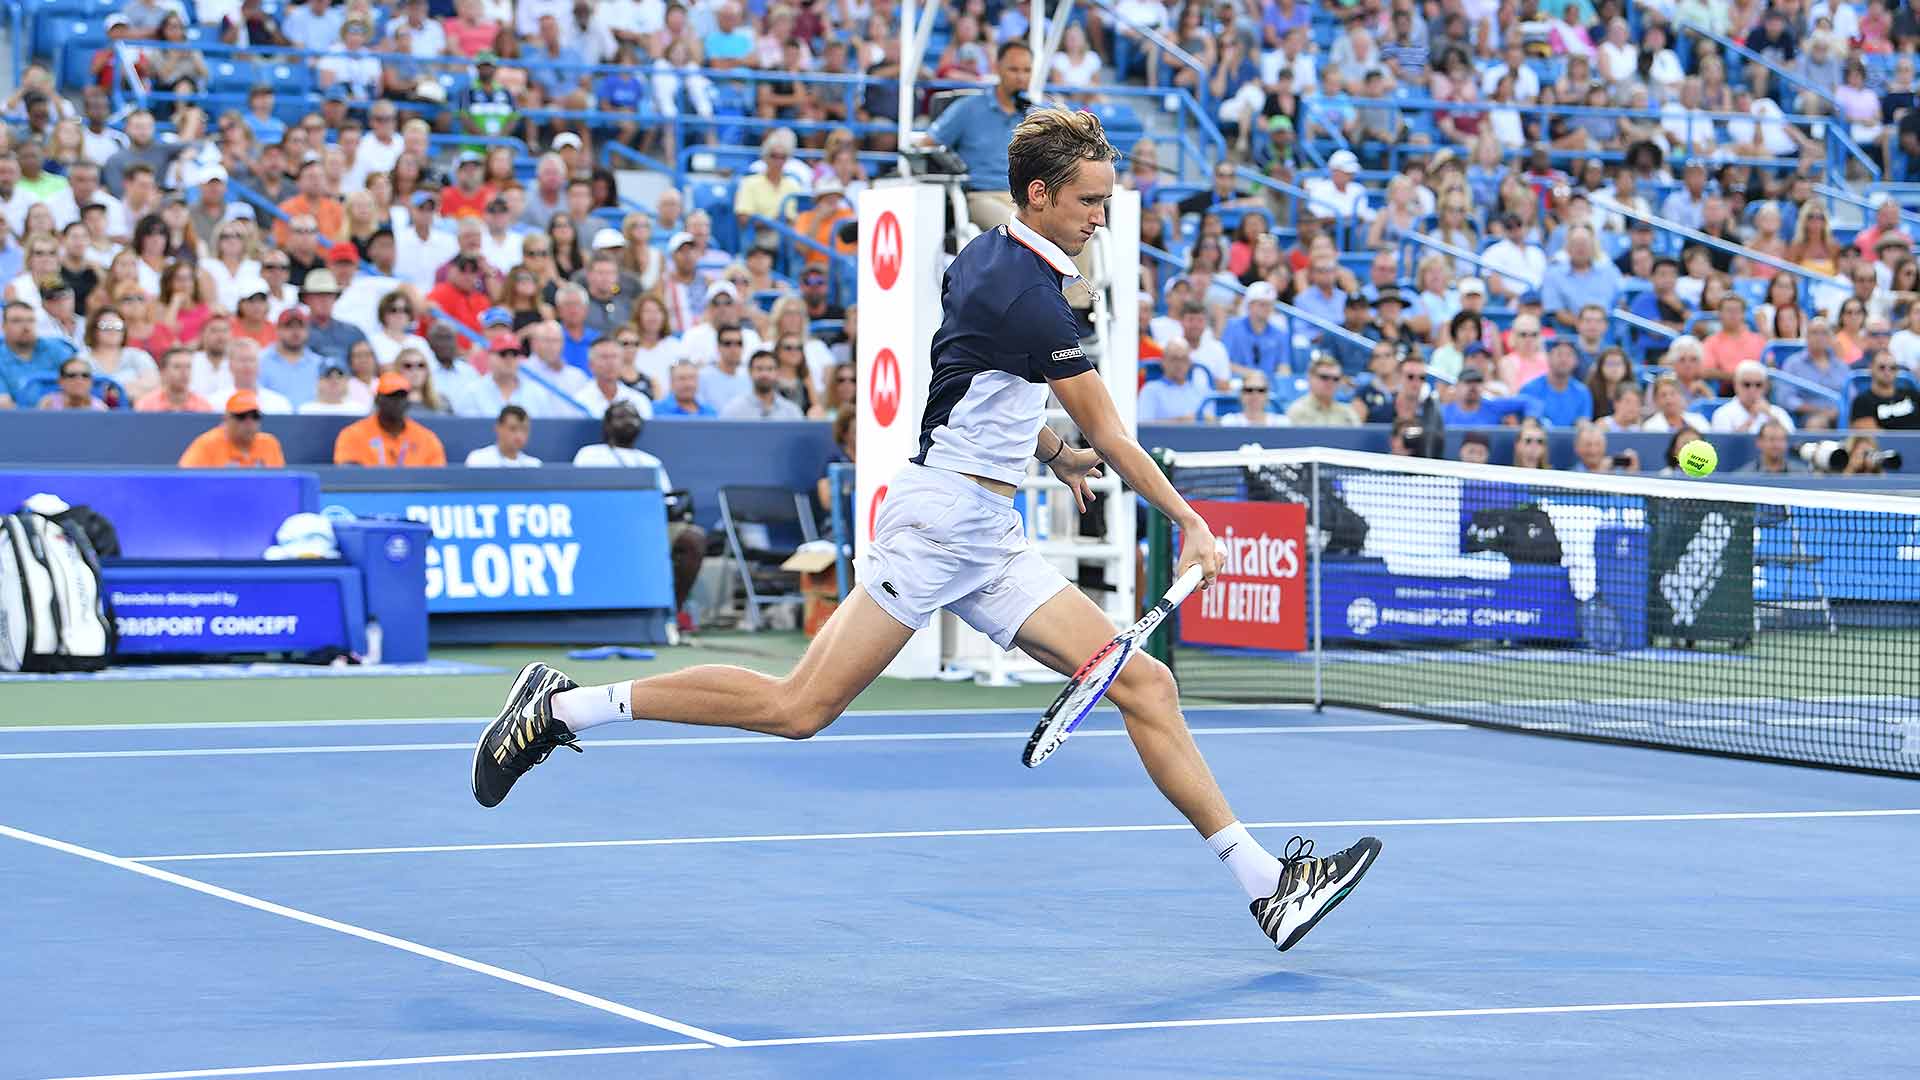 Daniil Medvedev rallies to beat Novak Djokovic in three sets in Cincinnati.